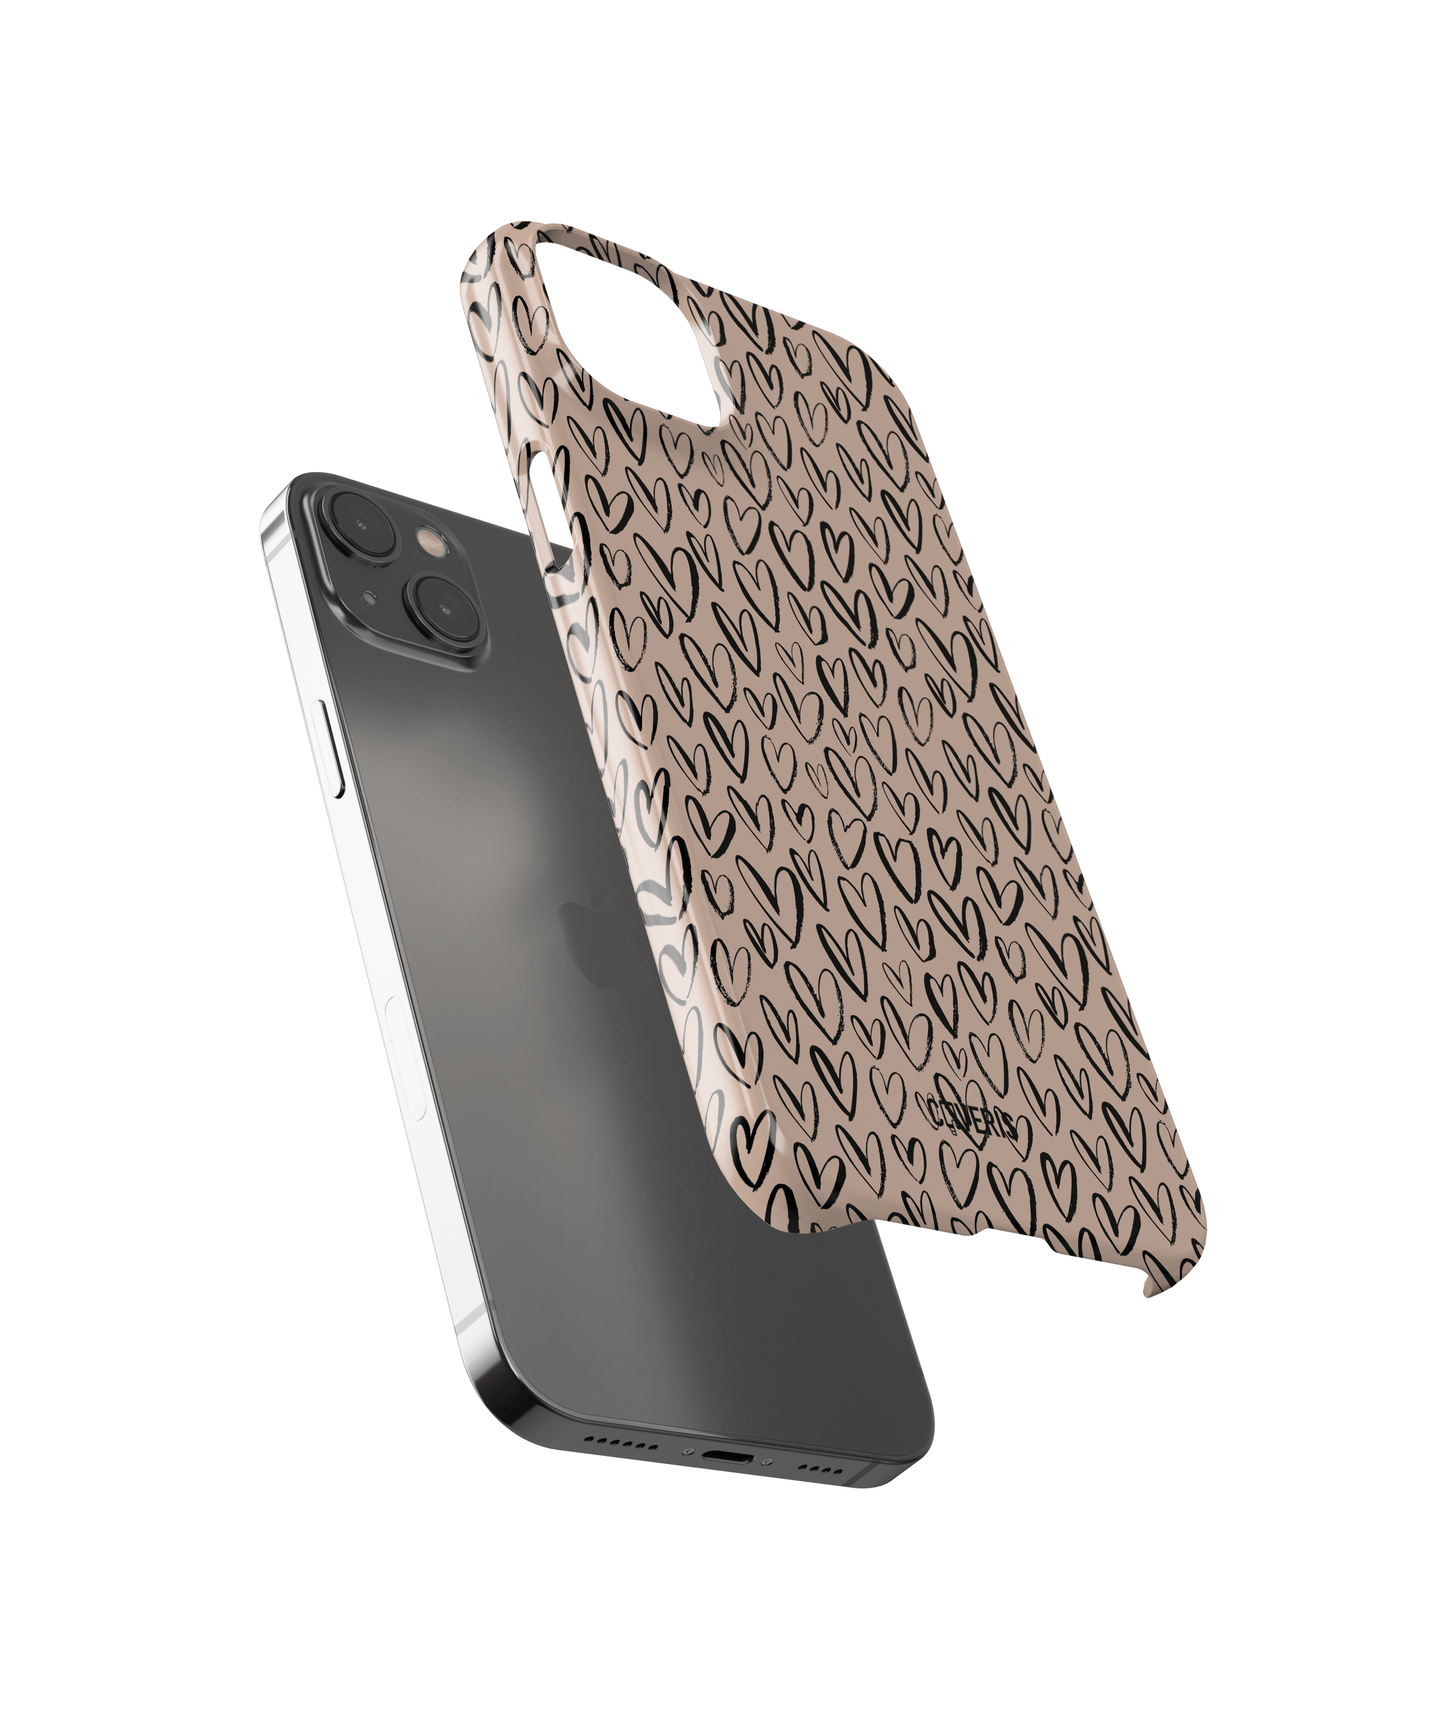 Enamor - Samsung Galaxy A50 phone case